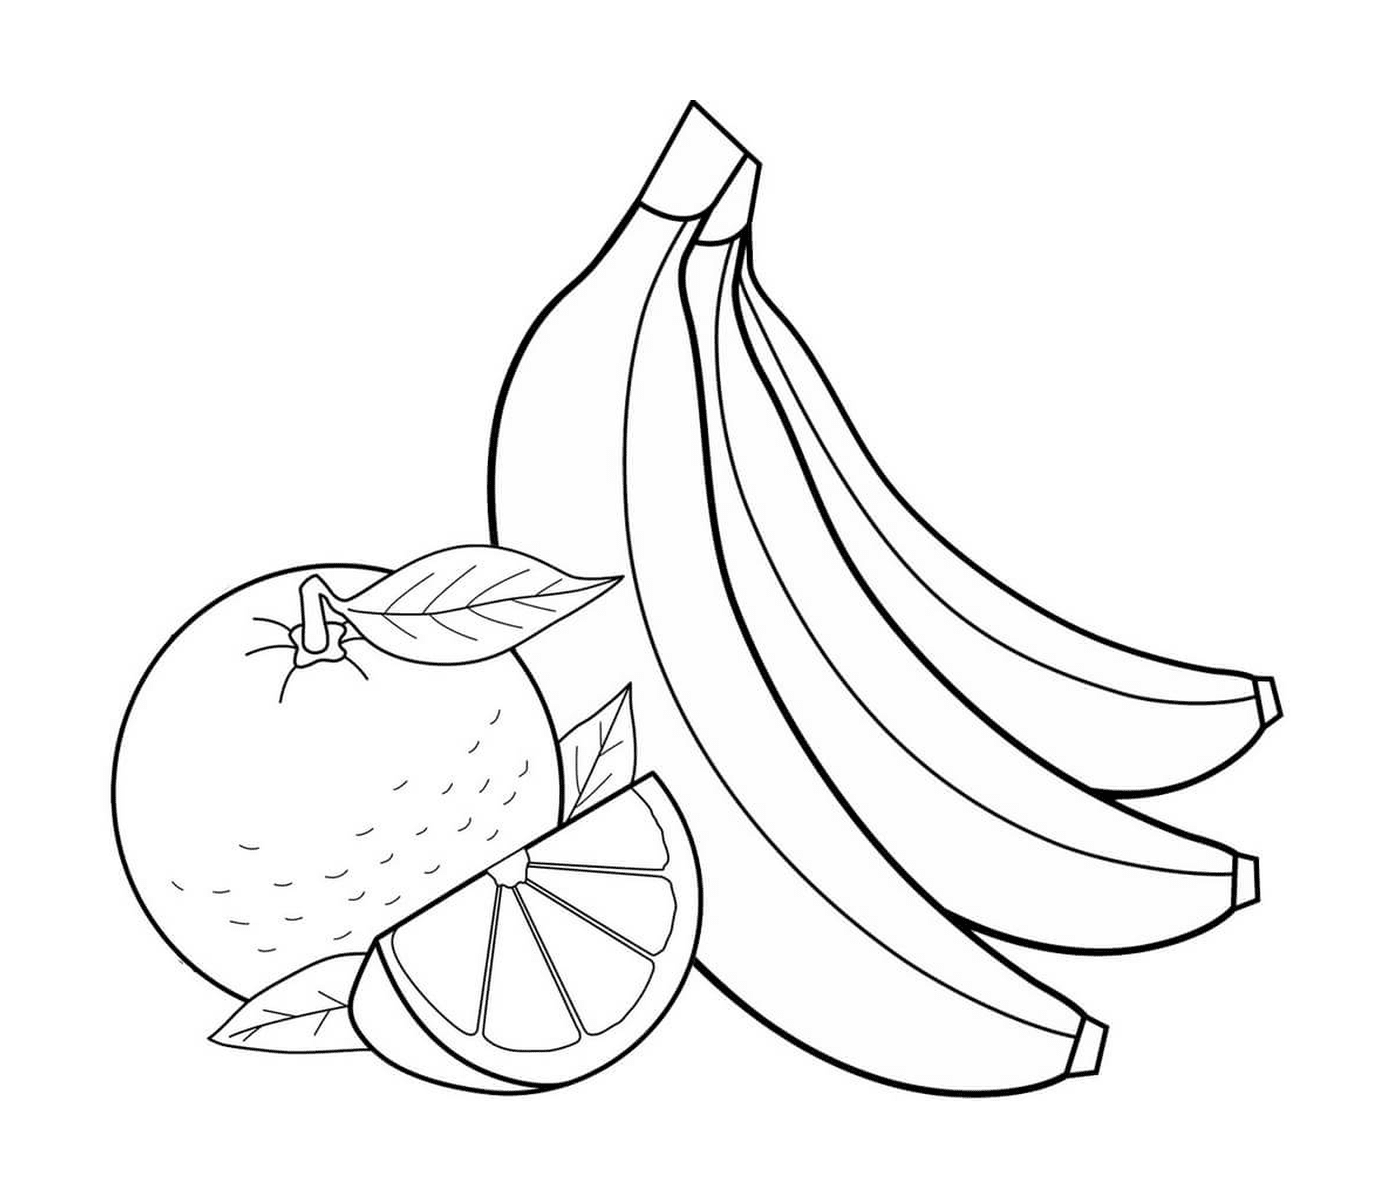  Manzana, naranja y plátano 